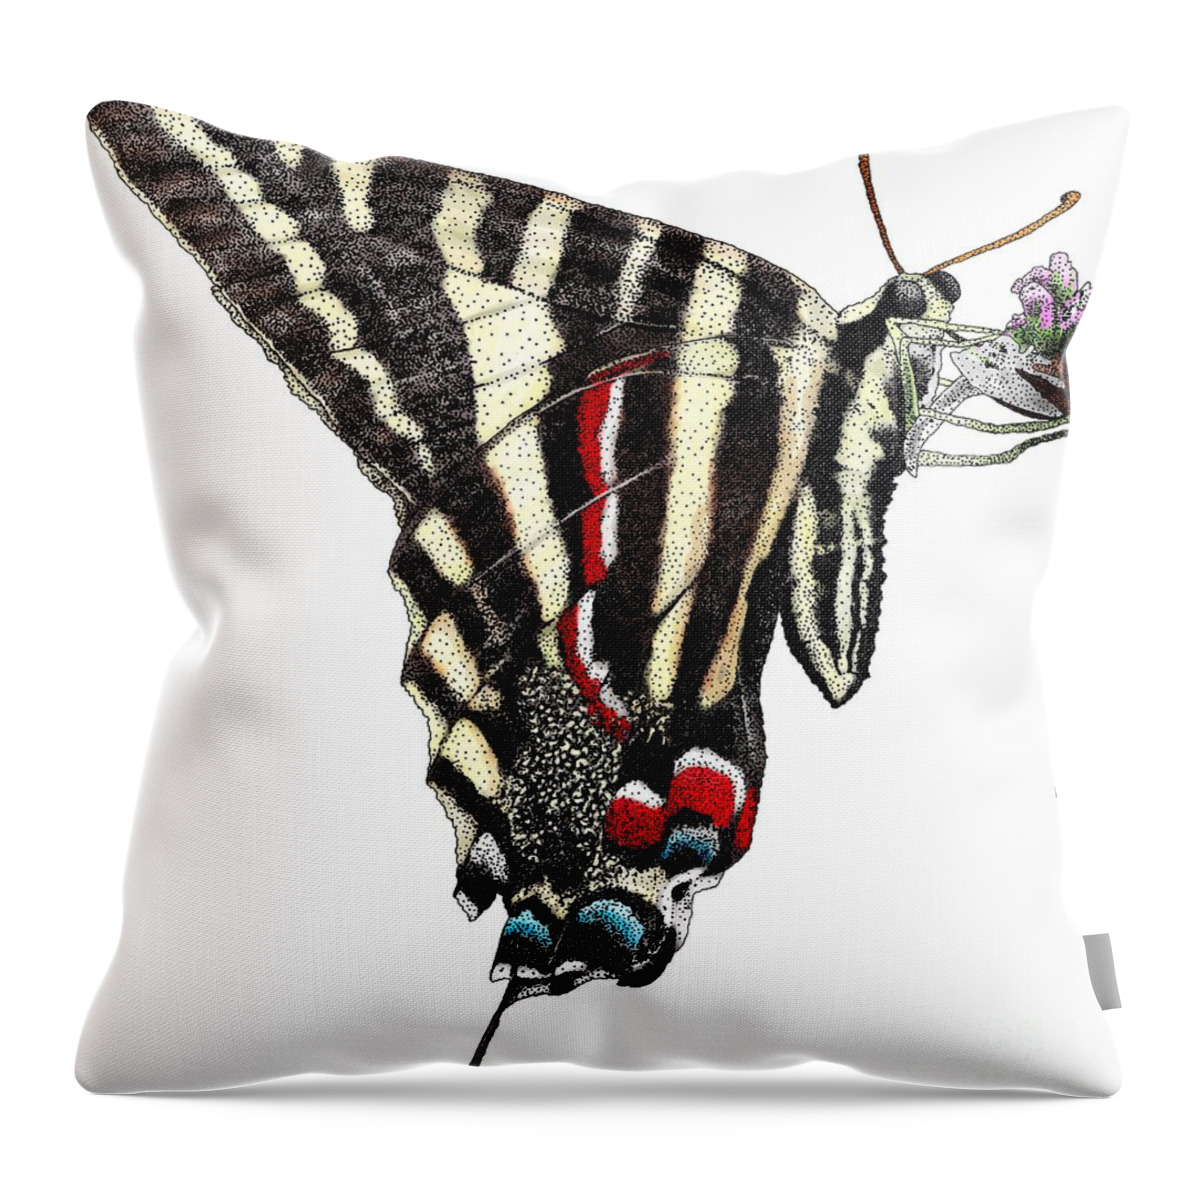 Zebra Swallowtail Butterfly Throw Pillow featuring the photograph Zebra Swallowtail Butterfly by Roger Hall